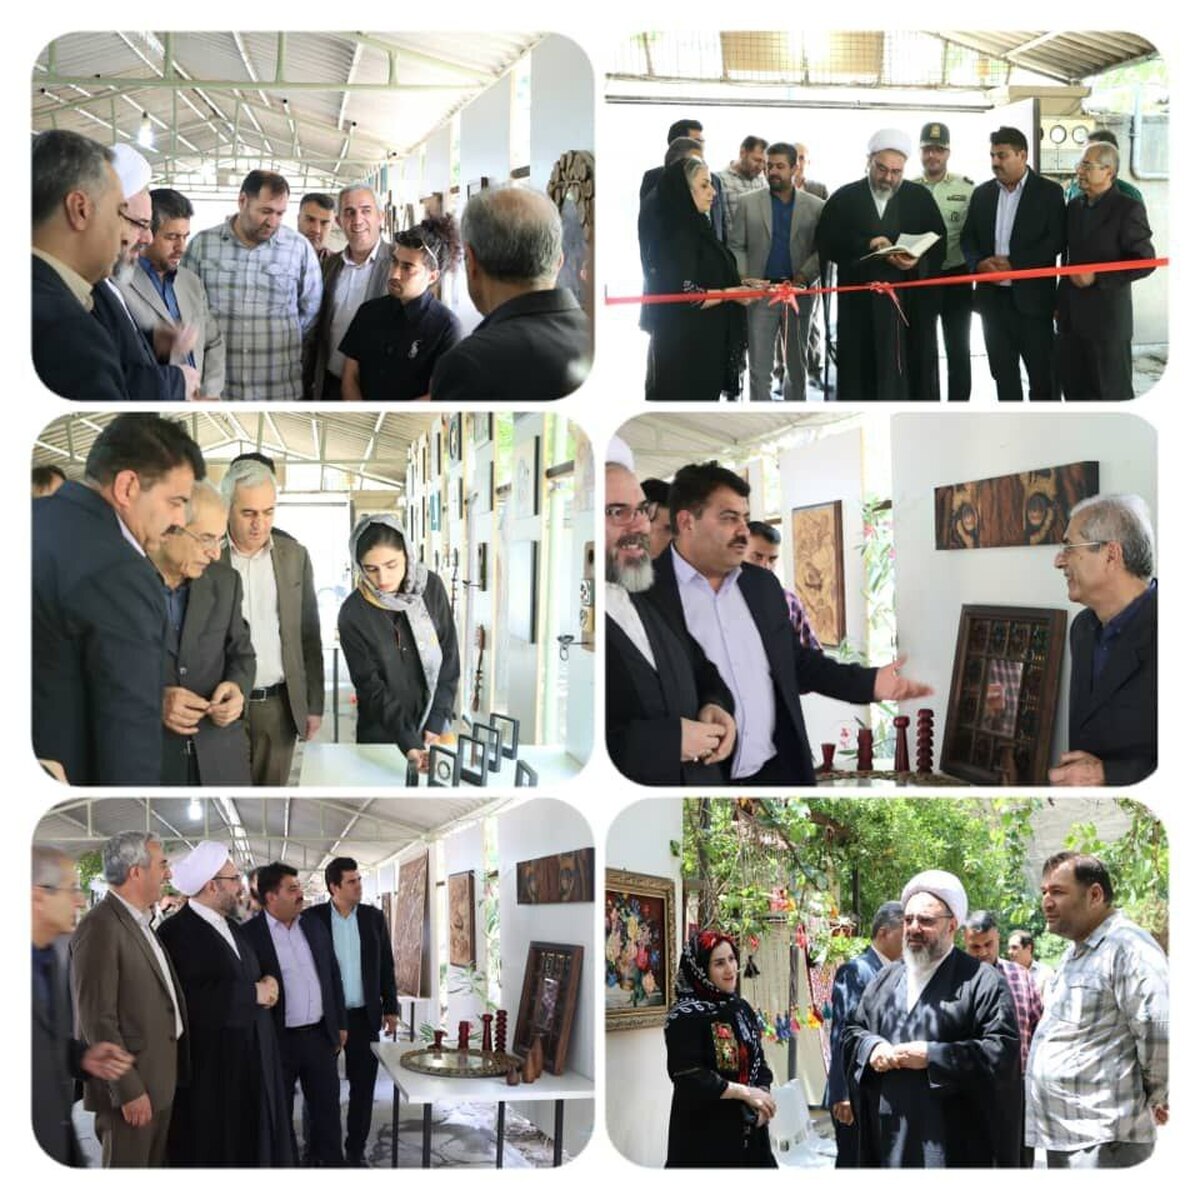 افتتاح نمایشگاه تخصصی هنرهای دستی و سنتی  "معرق و منبت" در شهر باغستان